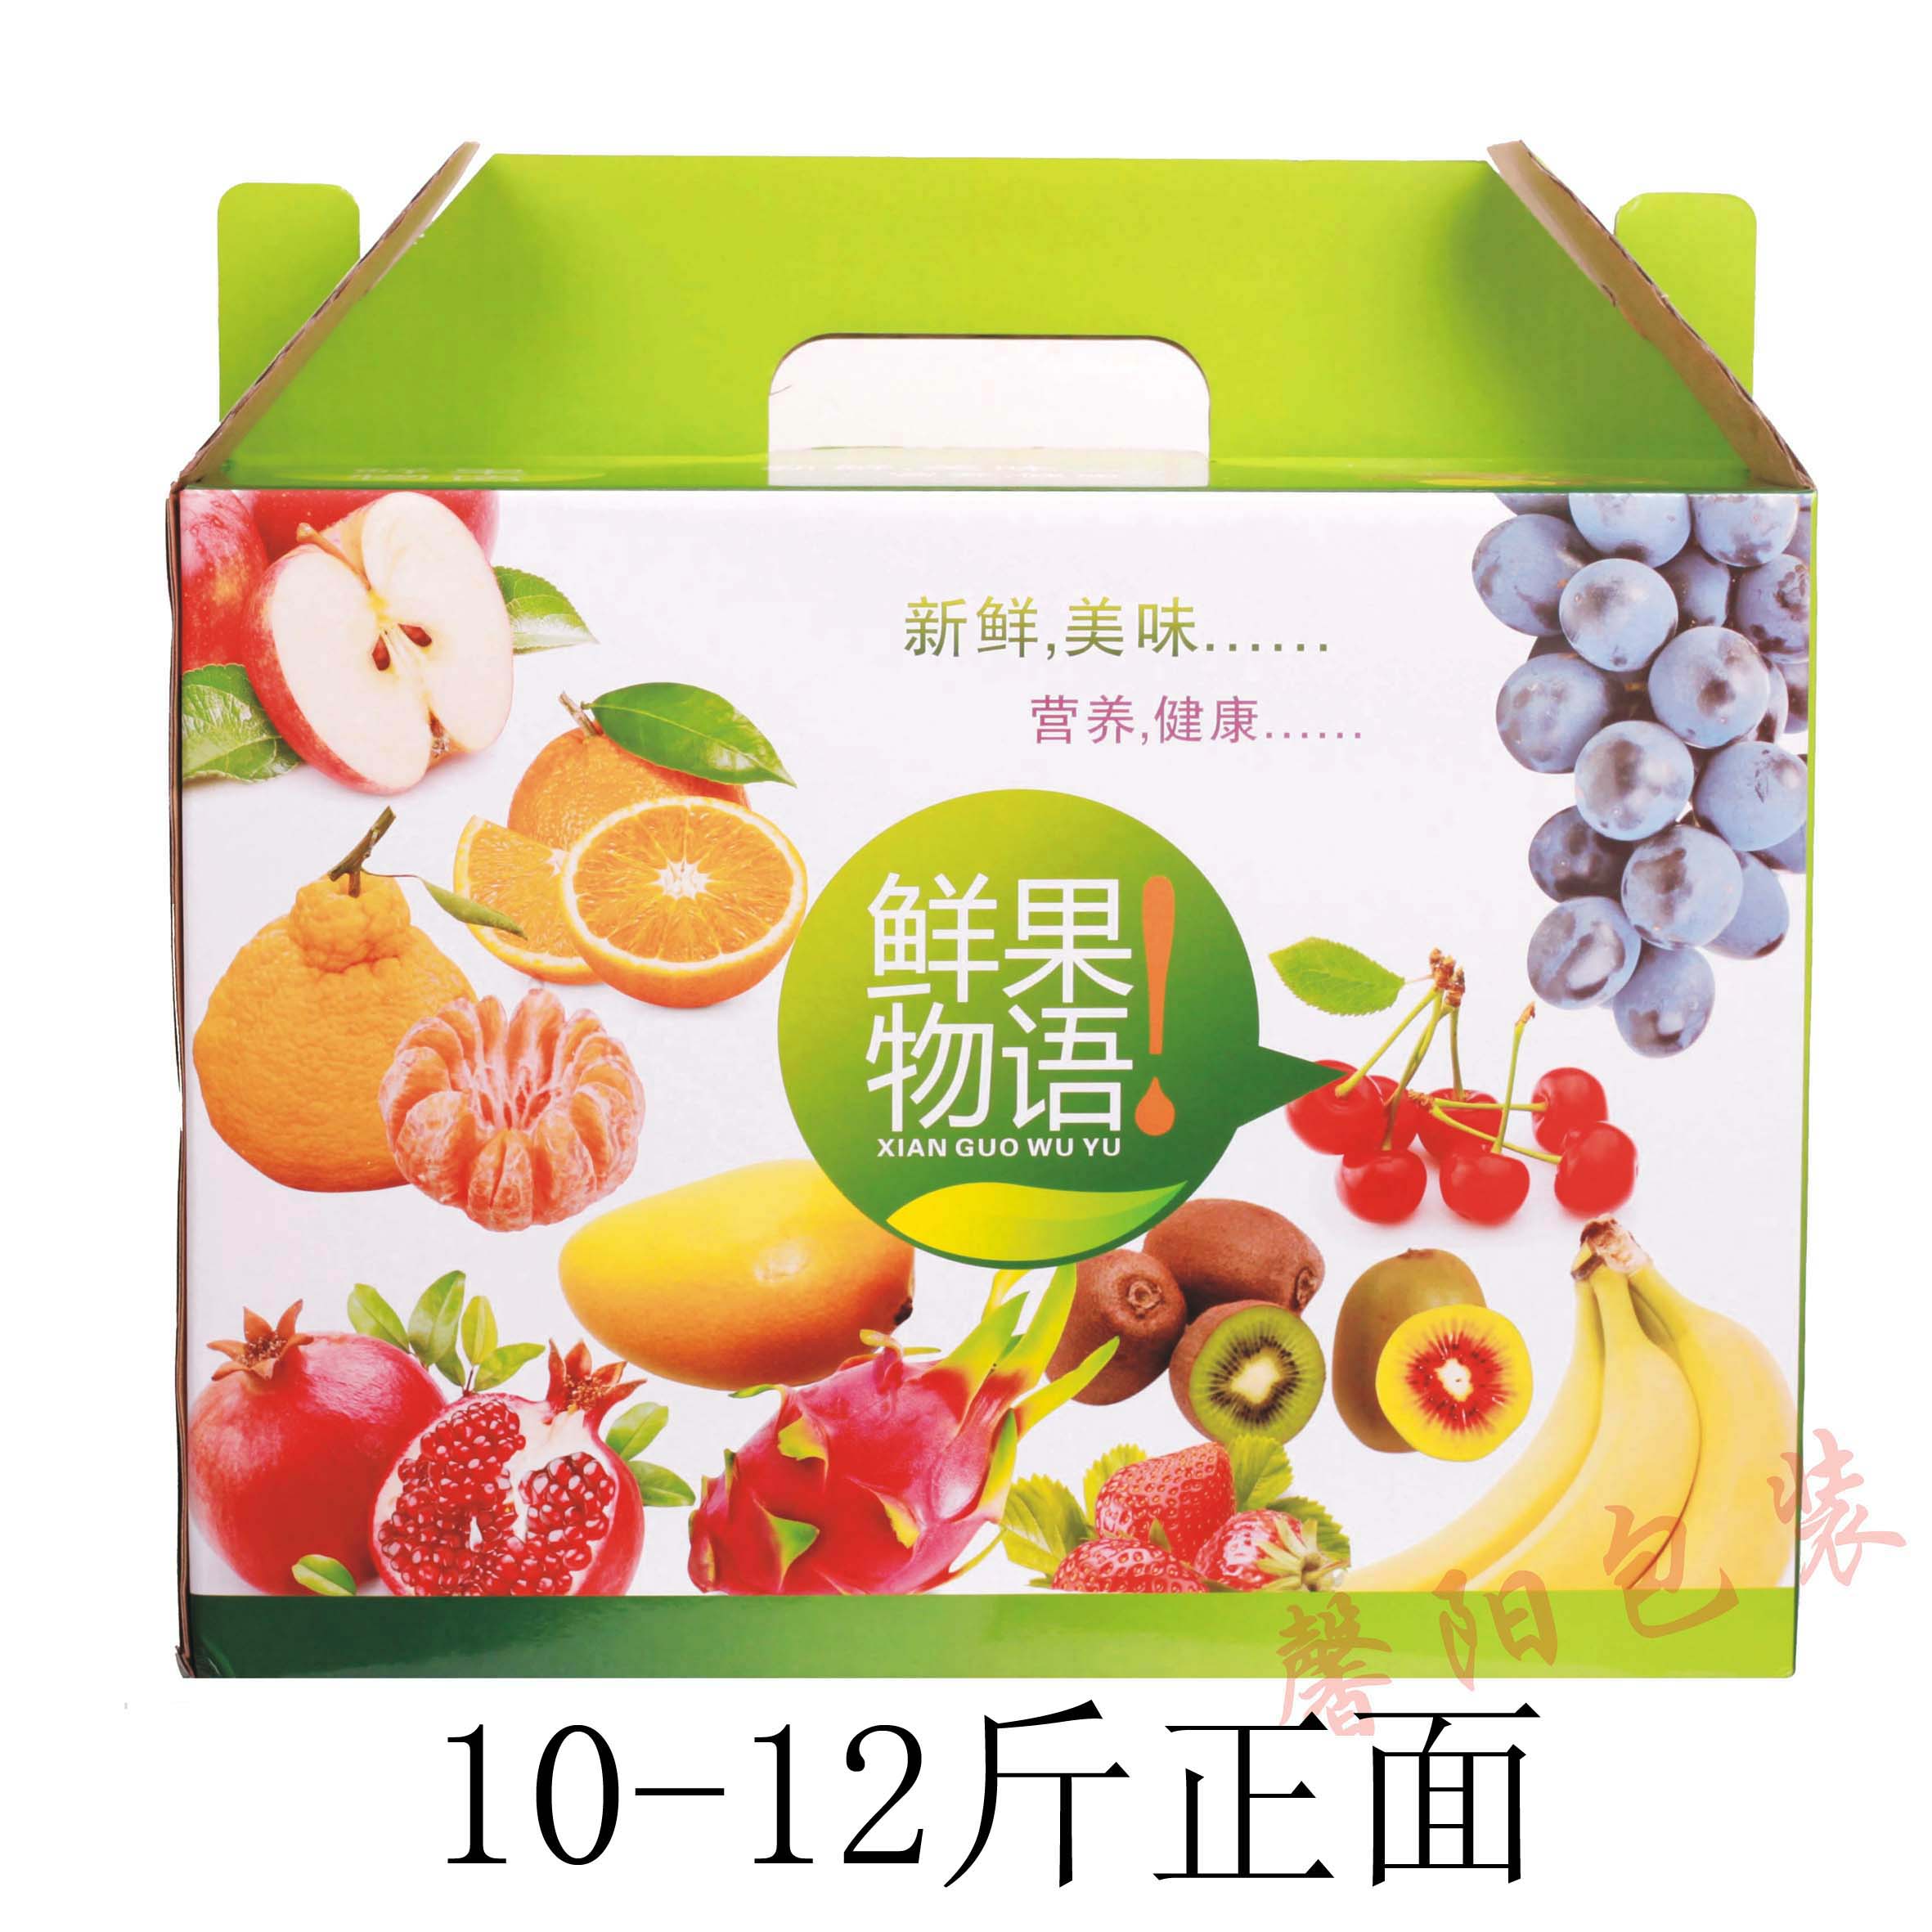 现货通用柑橘香梨苹果纸箱节日送人综合水果精品礼盒包装厂家批发